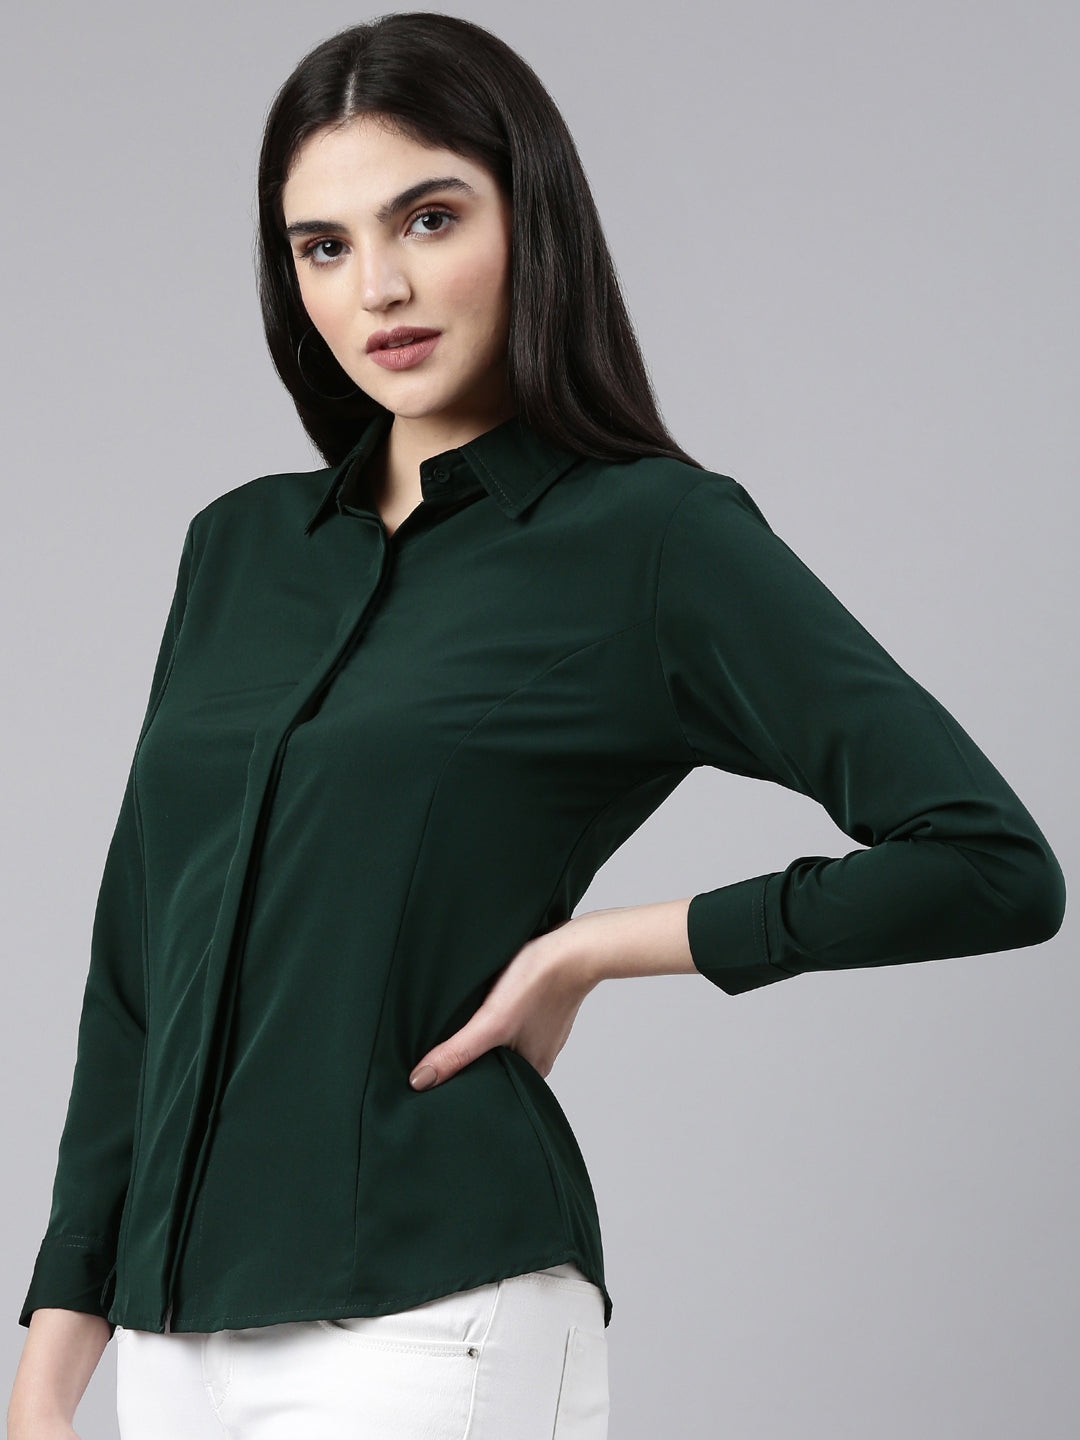 Women Green Solid Shirt